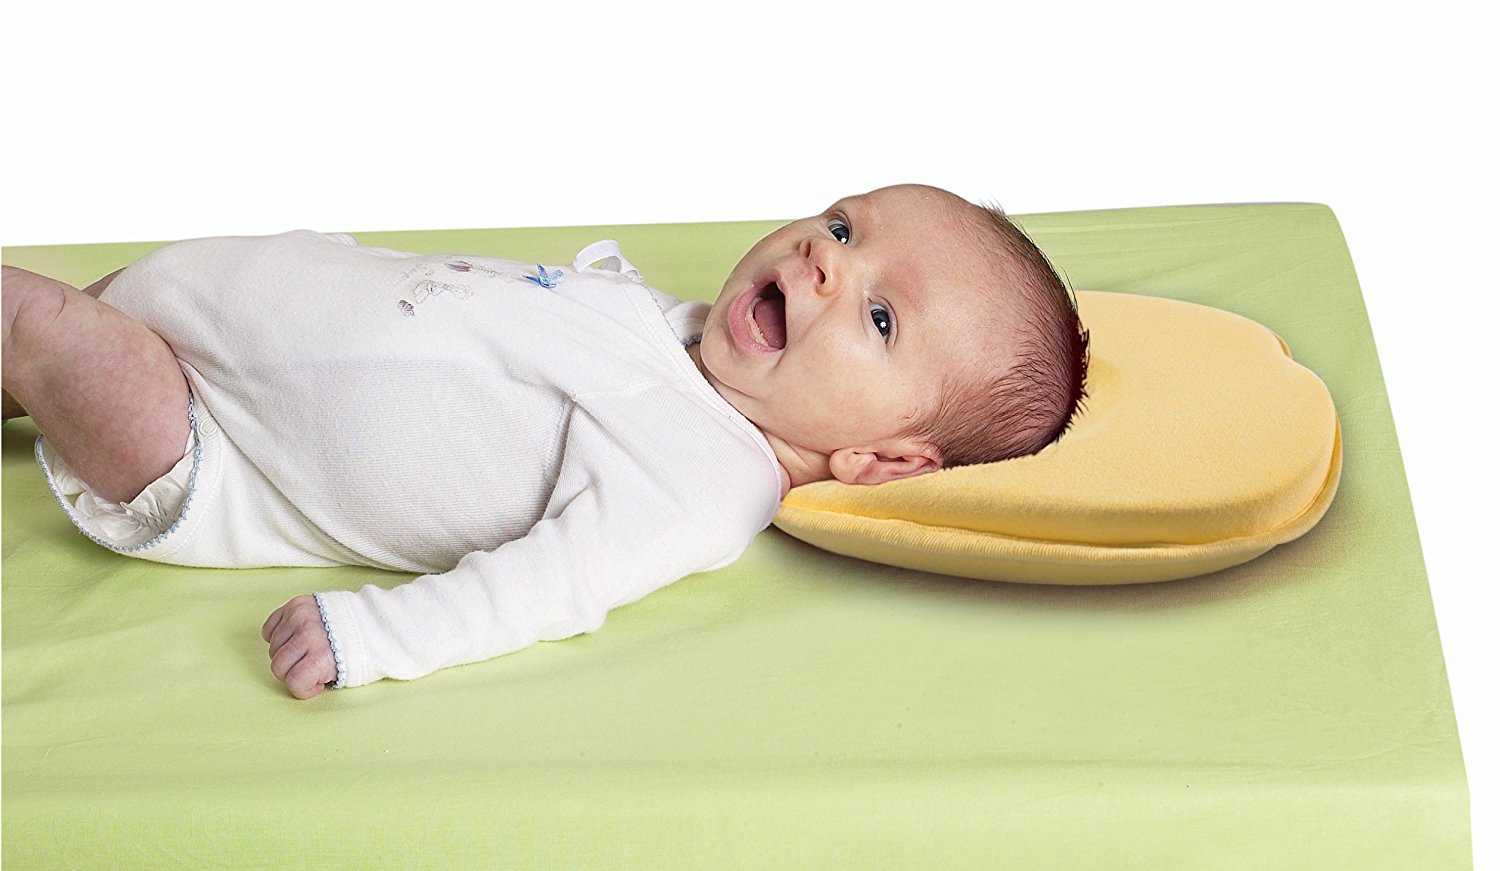 Разновидности детских подушек для сна младенцам от года